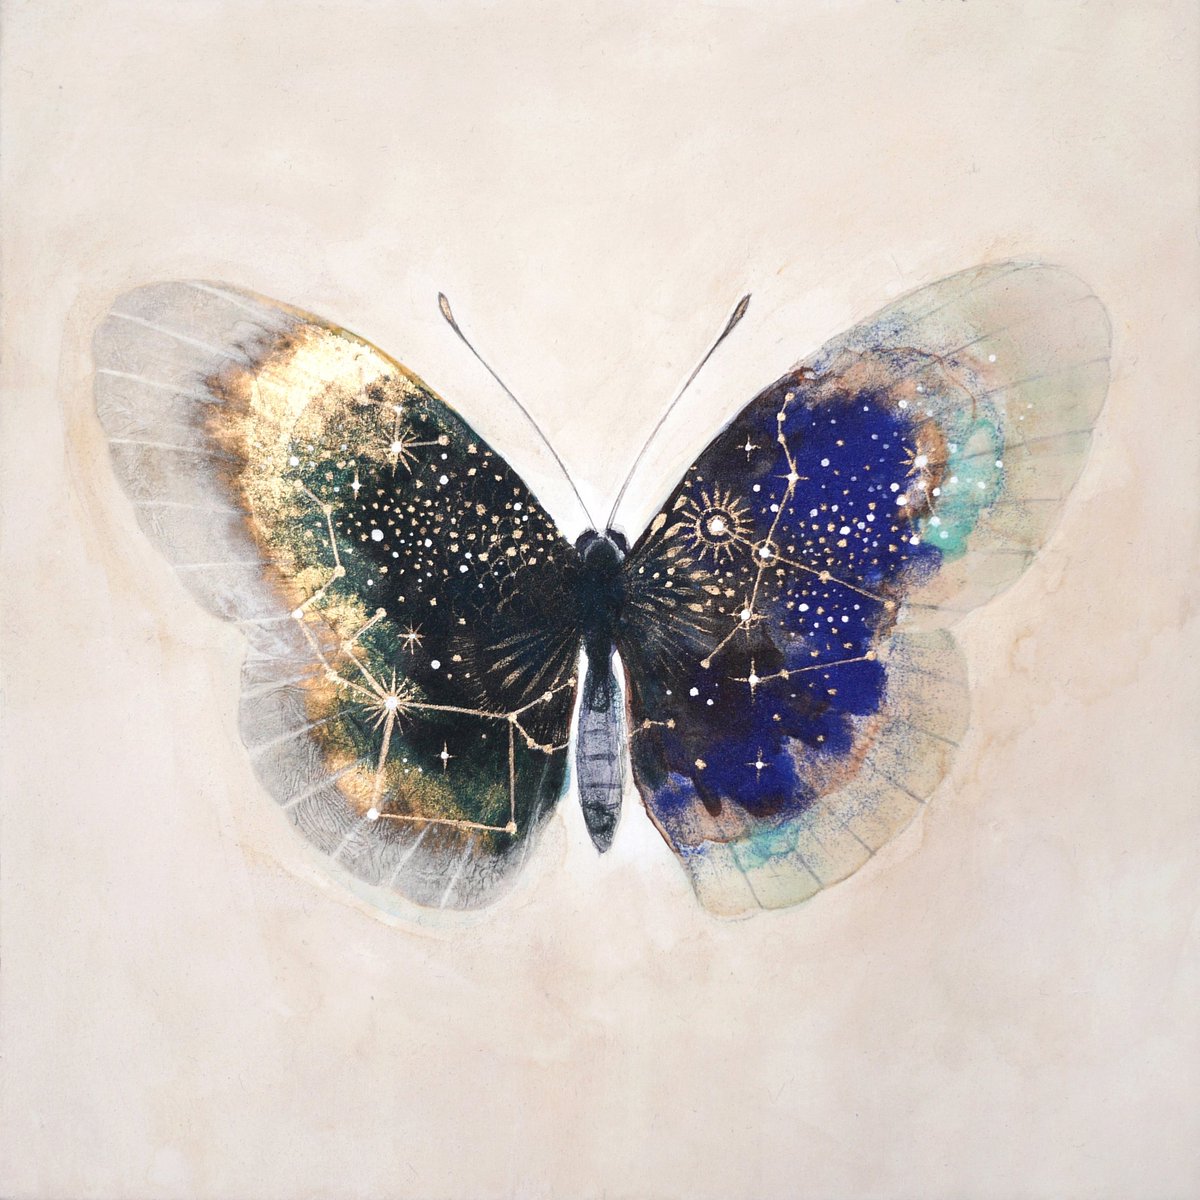 「#もう一度見てもらいたいお気に入りを貼る星の蝶はこの蝶がお気に入りです。 」|車谷 典子のイラスト